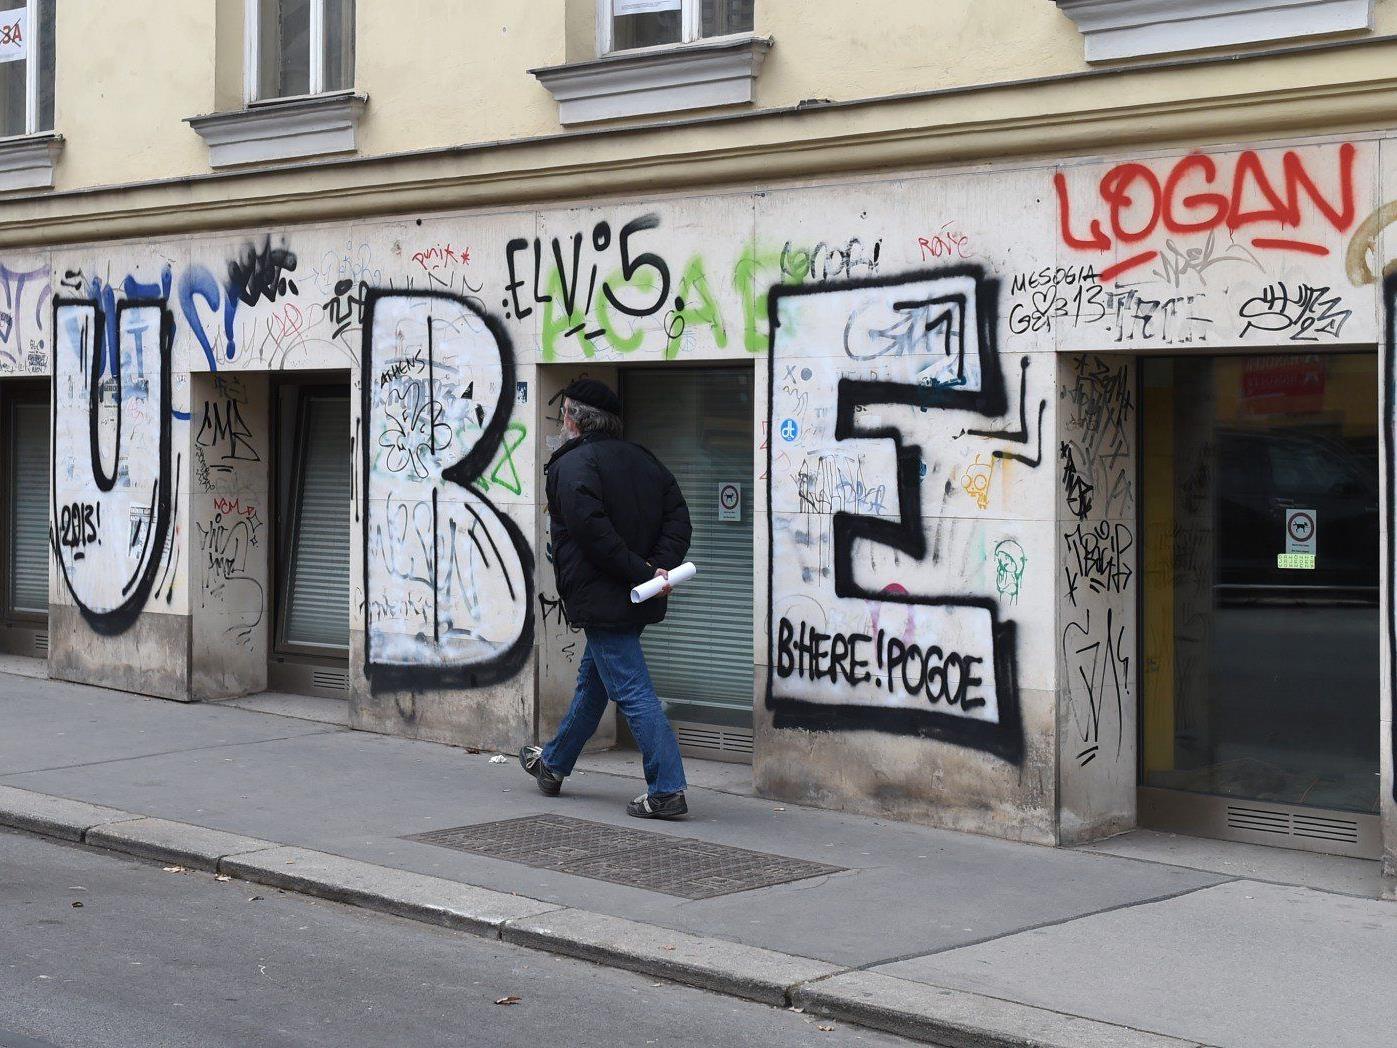 Nach Puber: Erneut Sprayer in Wien festgenommen